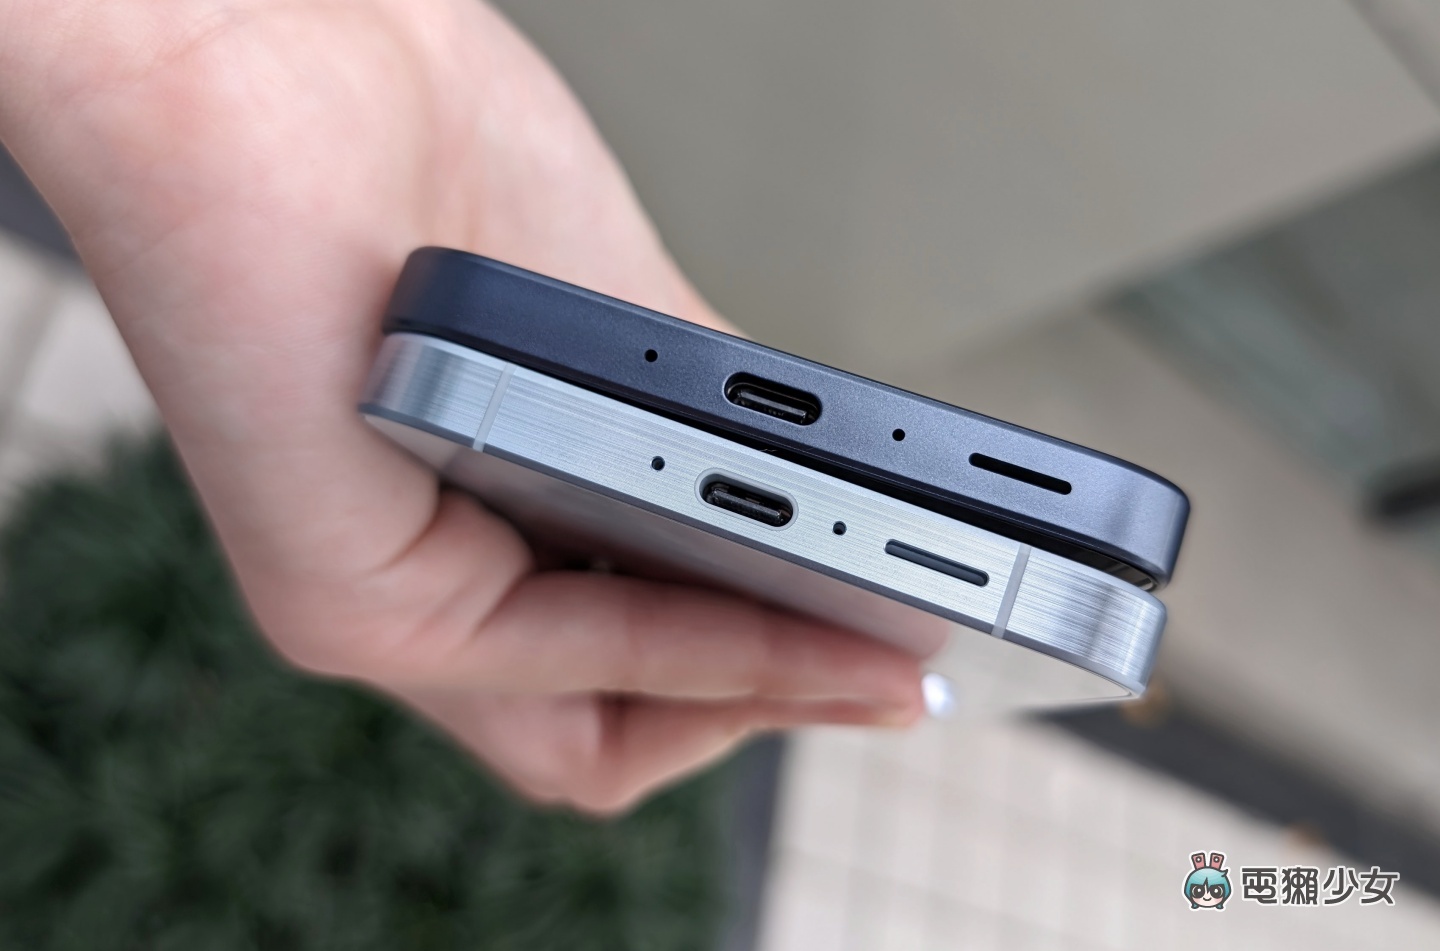 三星 Galaxy A55 5G、Galaxy A35 5G 上手開箱！規格、亮點、拍照表現比較